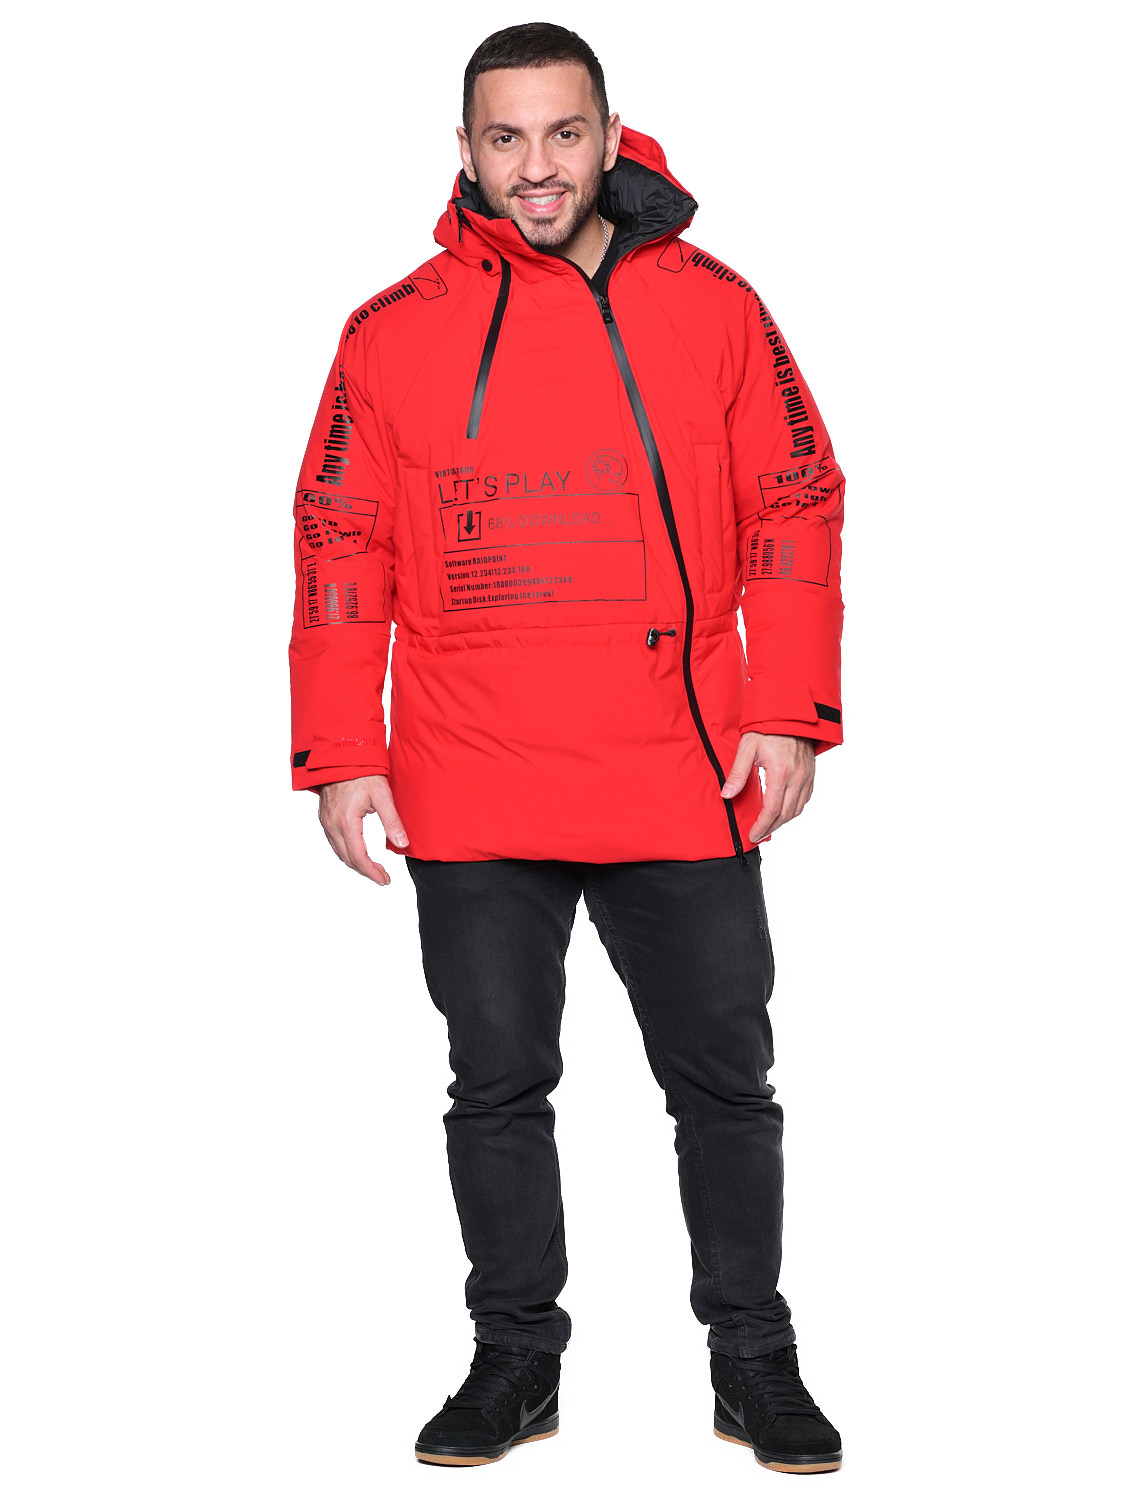 Куртка A-068 Красный